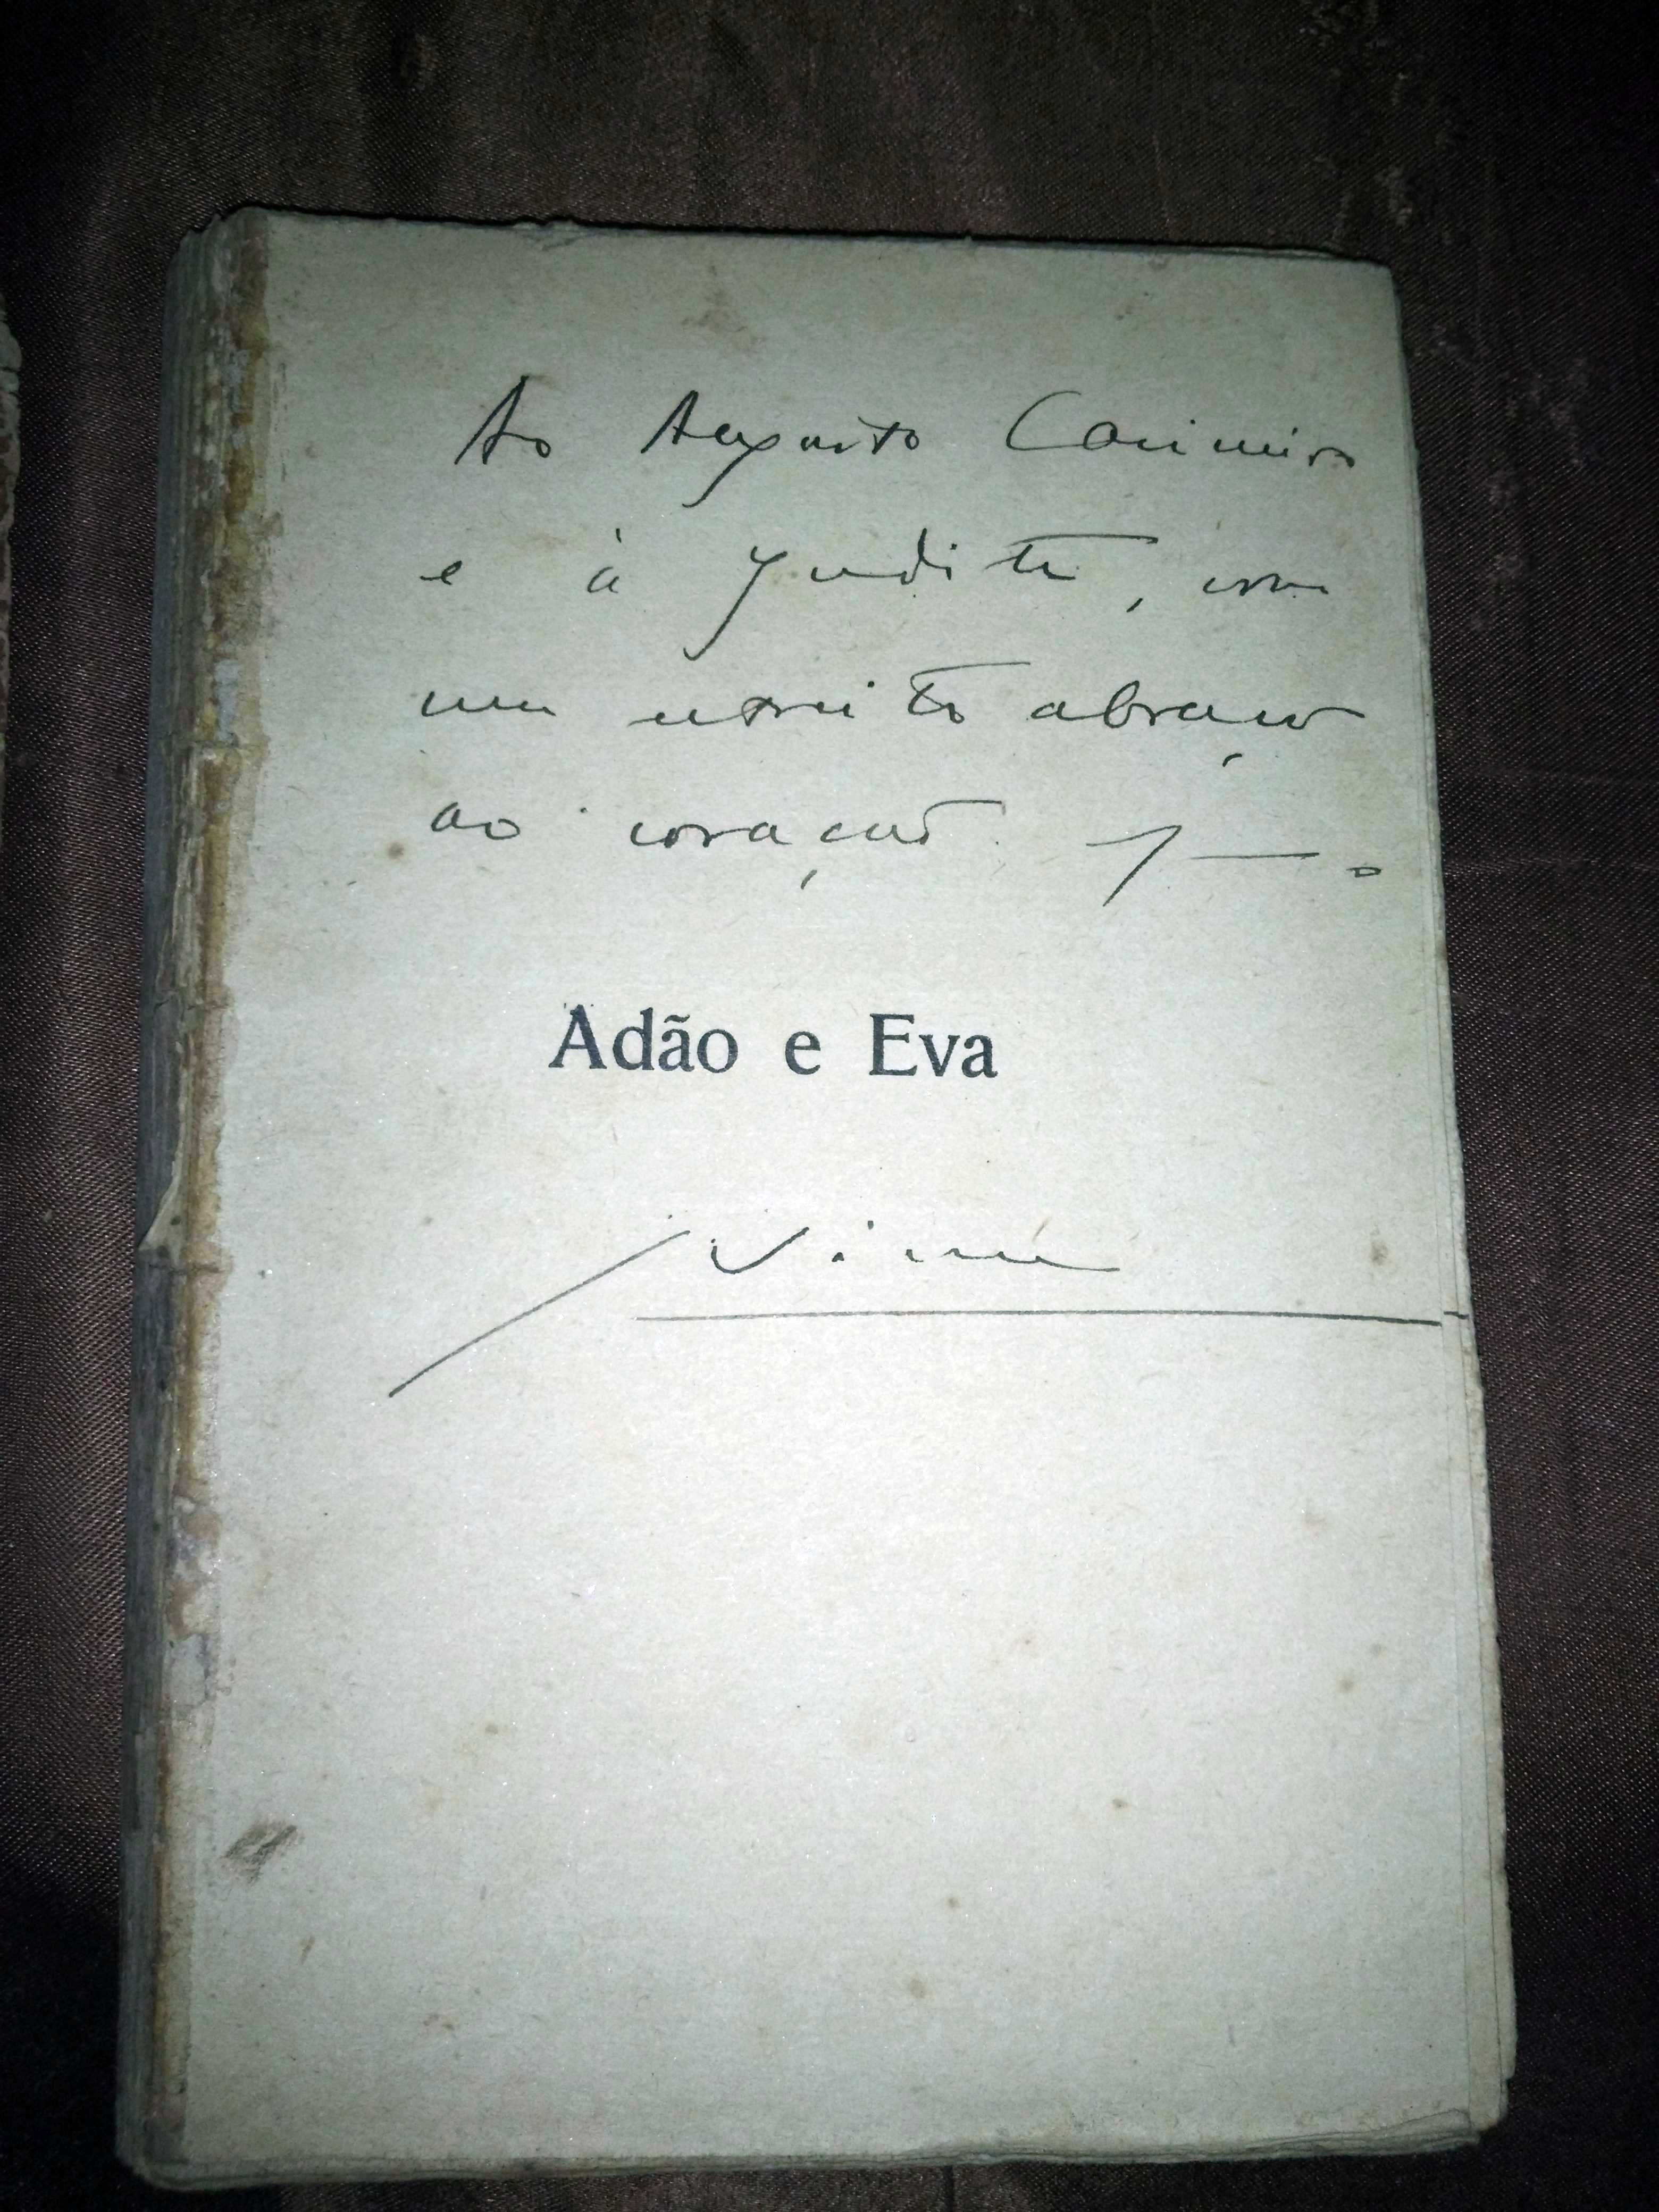 Adão e Eva - Jaime Cortesão - 1.º Milhar / 1.ª edição